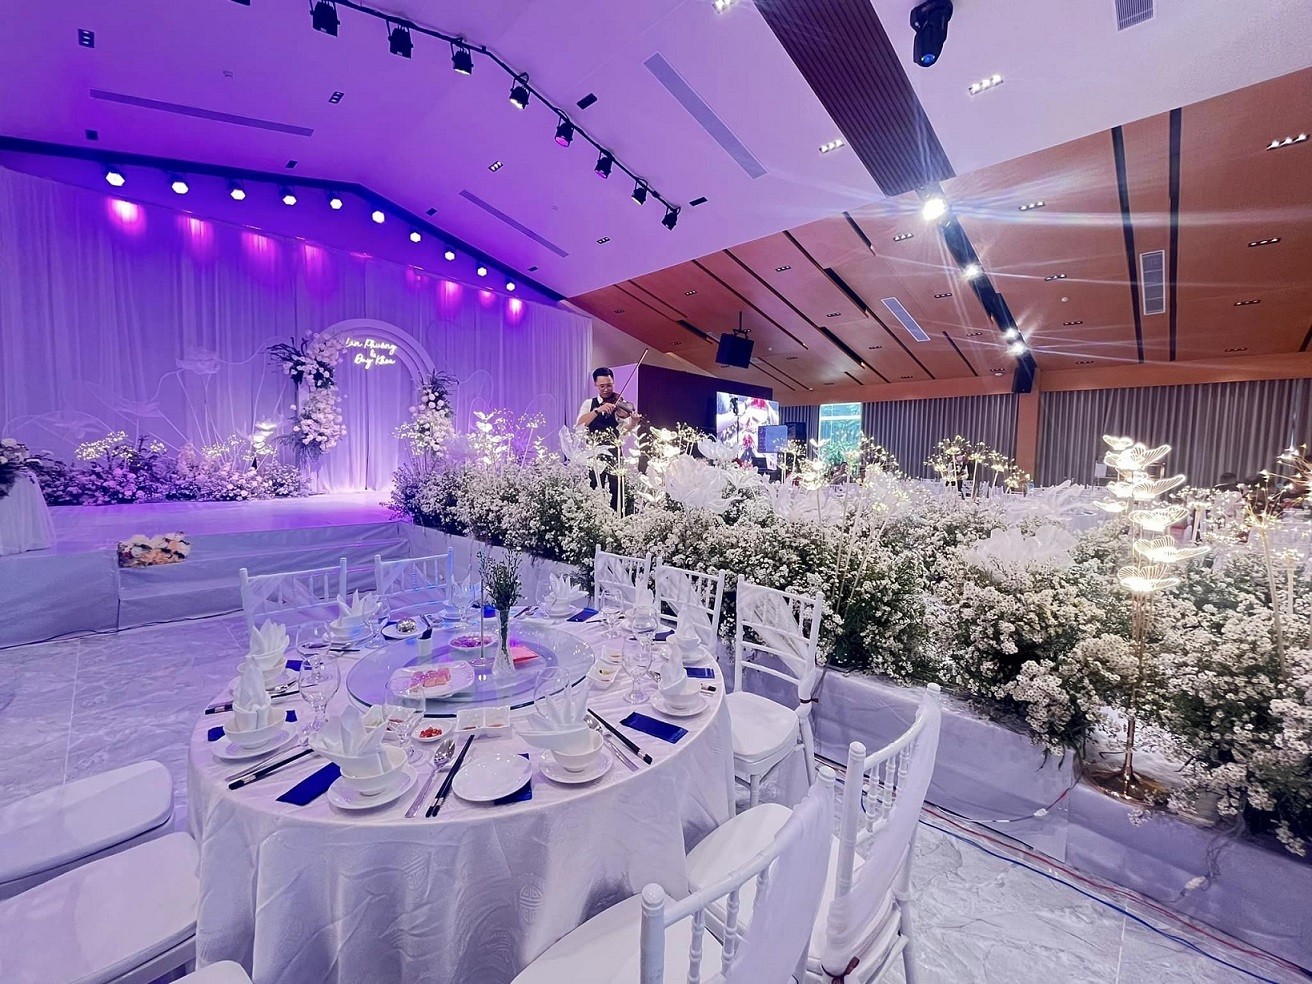 Sao Mai Center: Wedding season love song